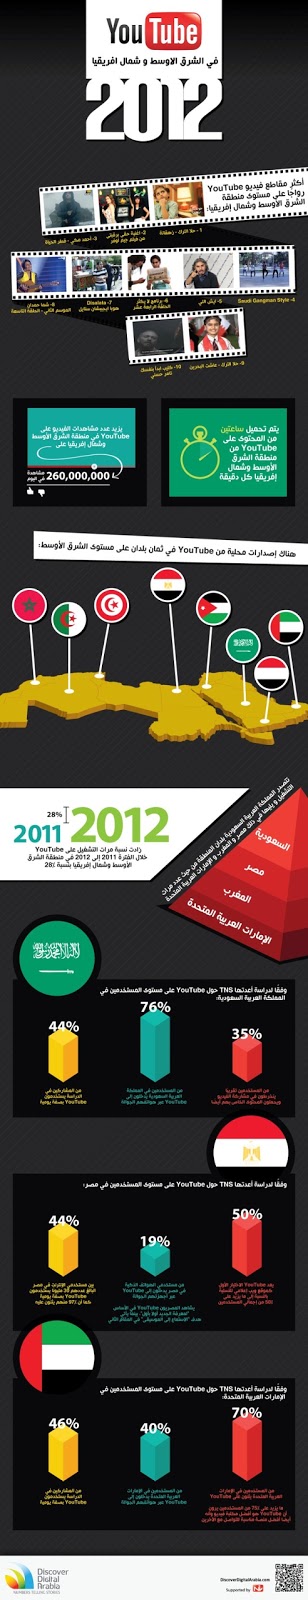 يوتيوب في الشرق الأوسط وشمال إفريقيا 2012 - انفوجرافيك